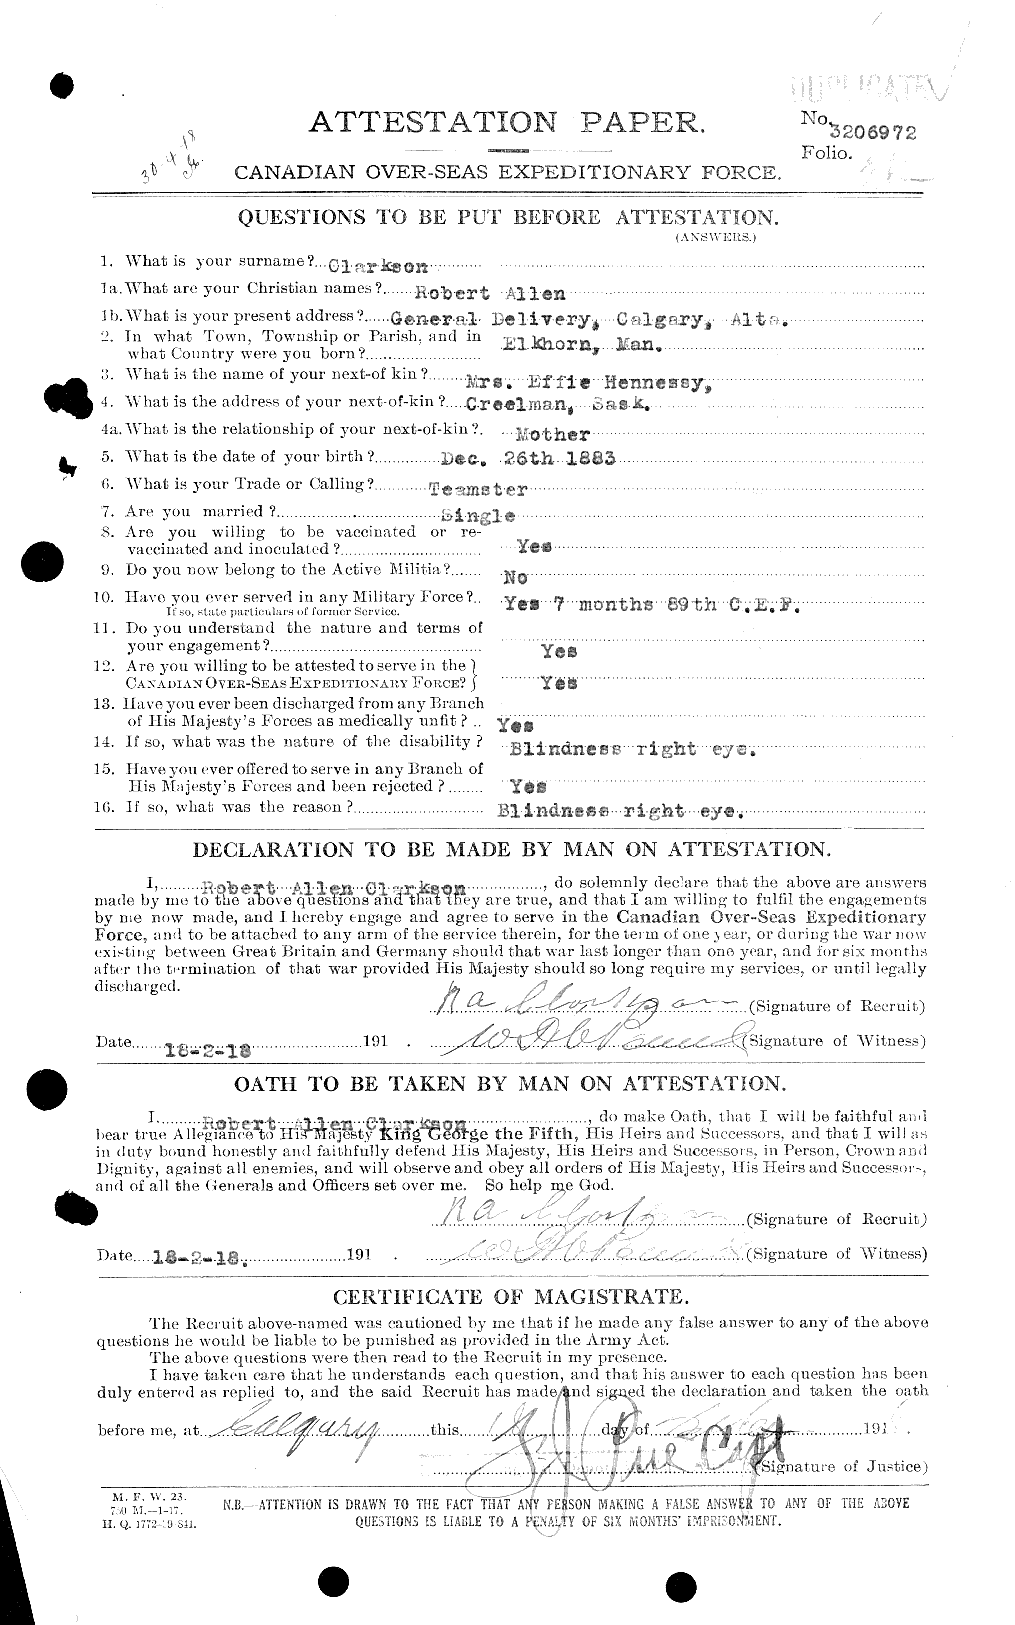 Dossiers du Personnel de la Première Guerre mondiale - CEC 019004c